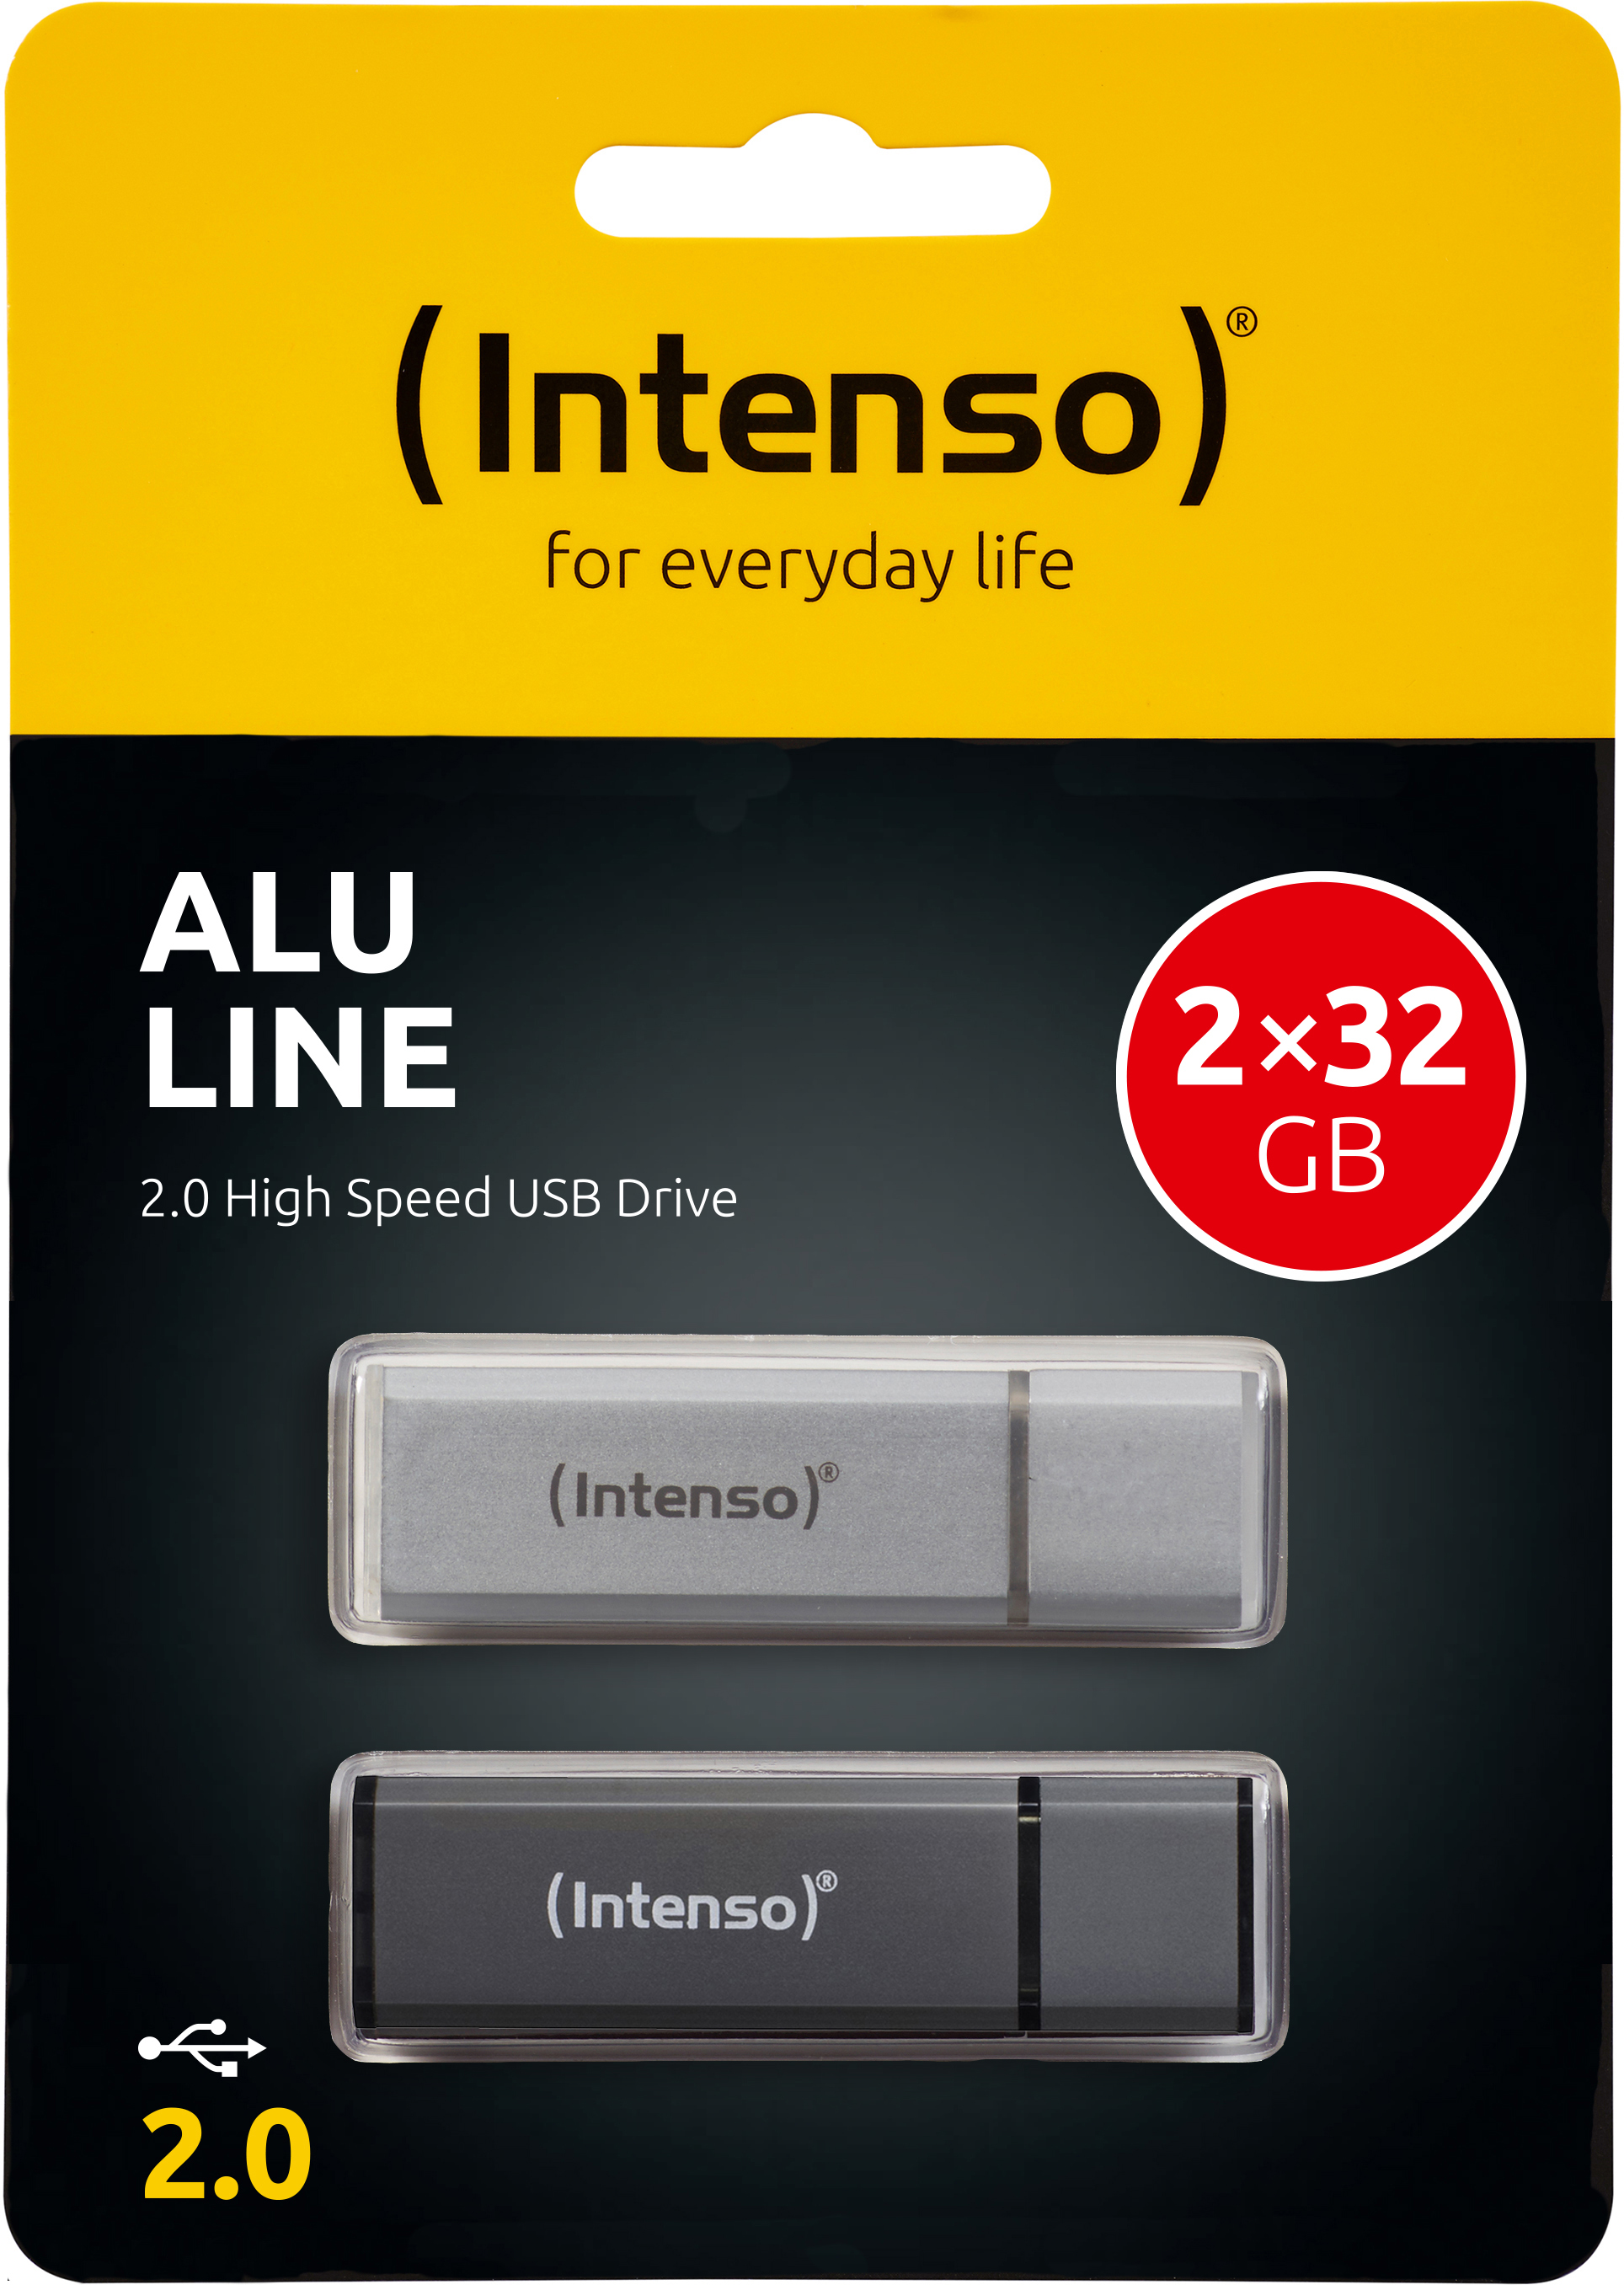 INTENSO Alu Line 2x GB, 32 USB-Stick, 28,00 Silber/Anthrazit MB/s